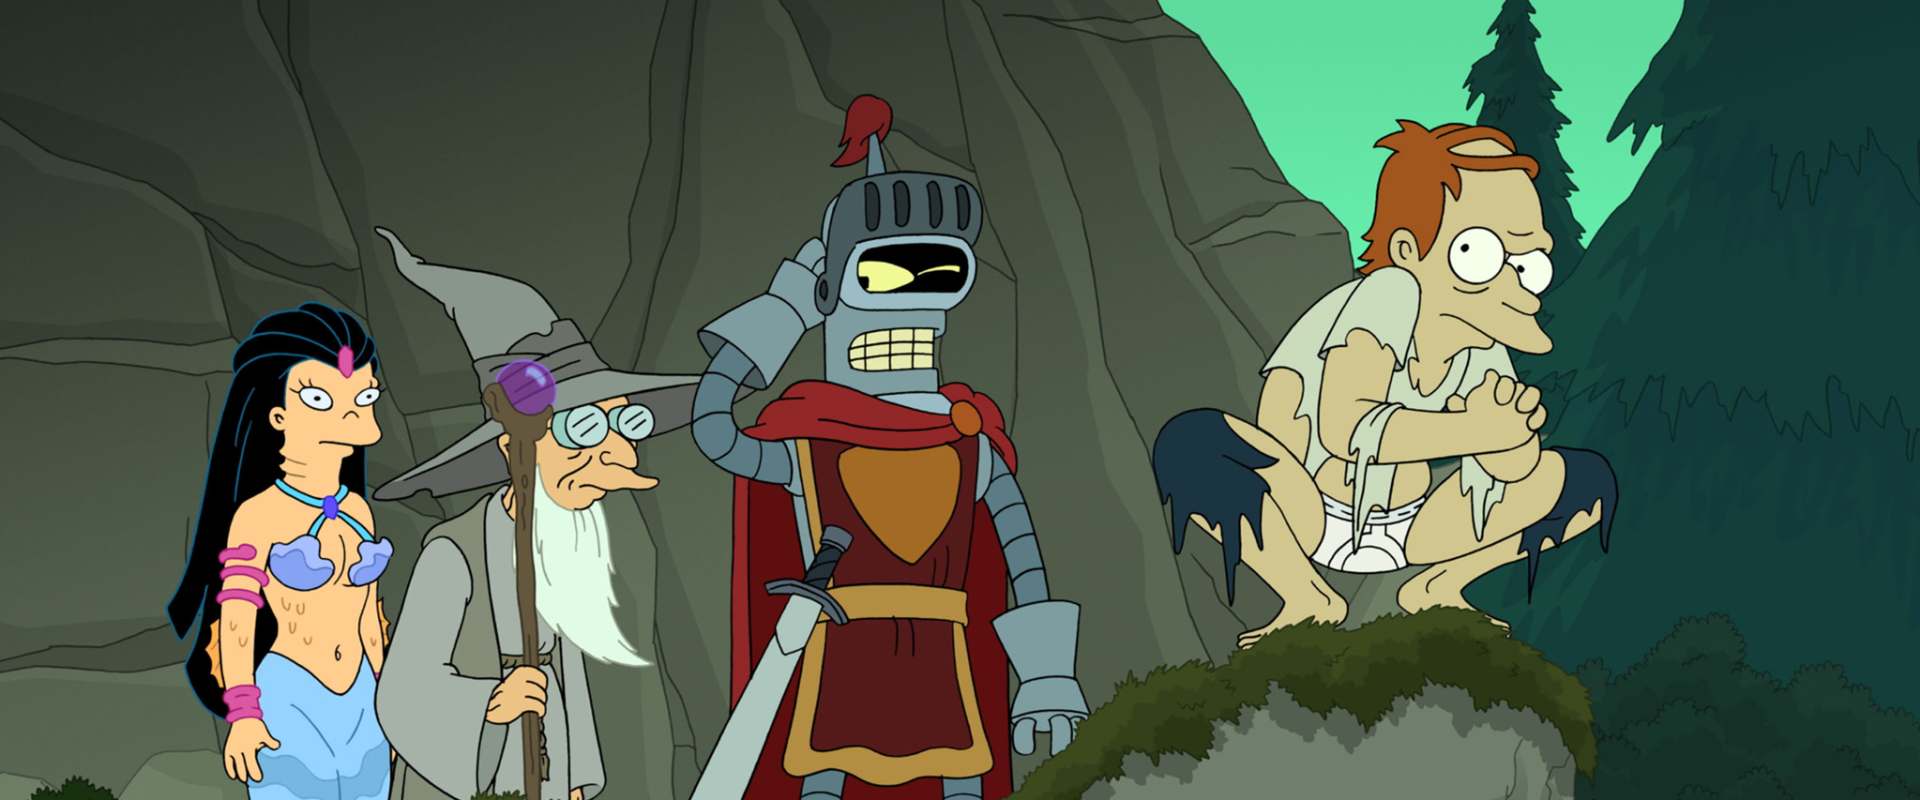 Futurama: Bender's Game background 1